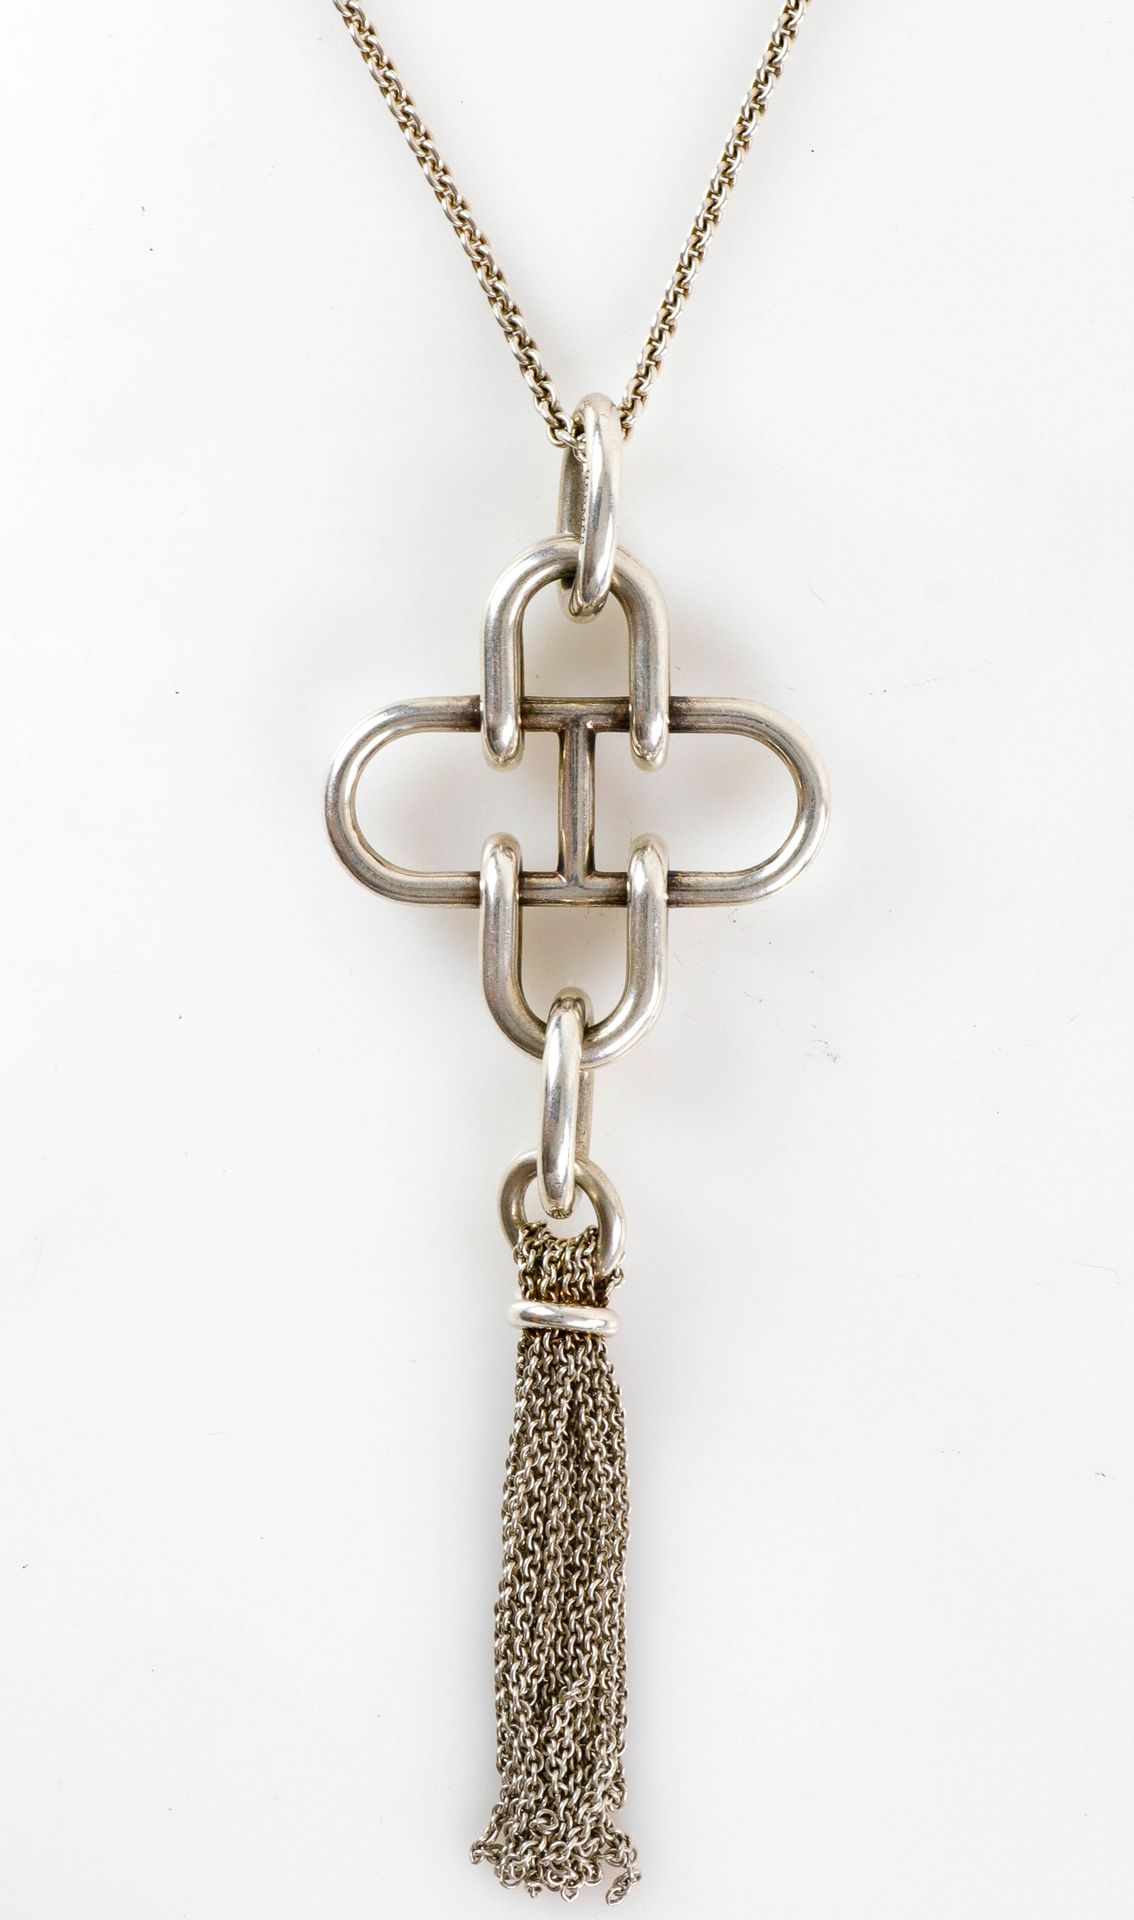 Null 赫米斯。罕见的 "Rose des Mers "银质长项链，有一个大型的镂空几何吊坠，吊着绒球。链条的长度：78厘米。吊坠的长度：16厘米。